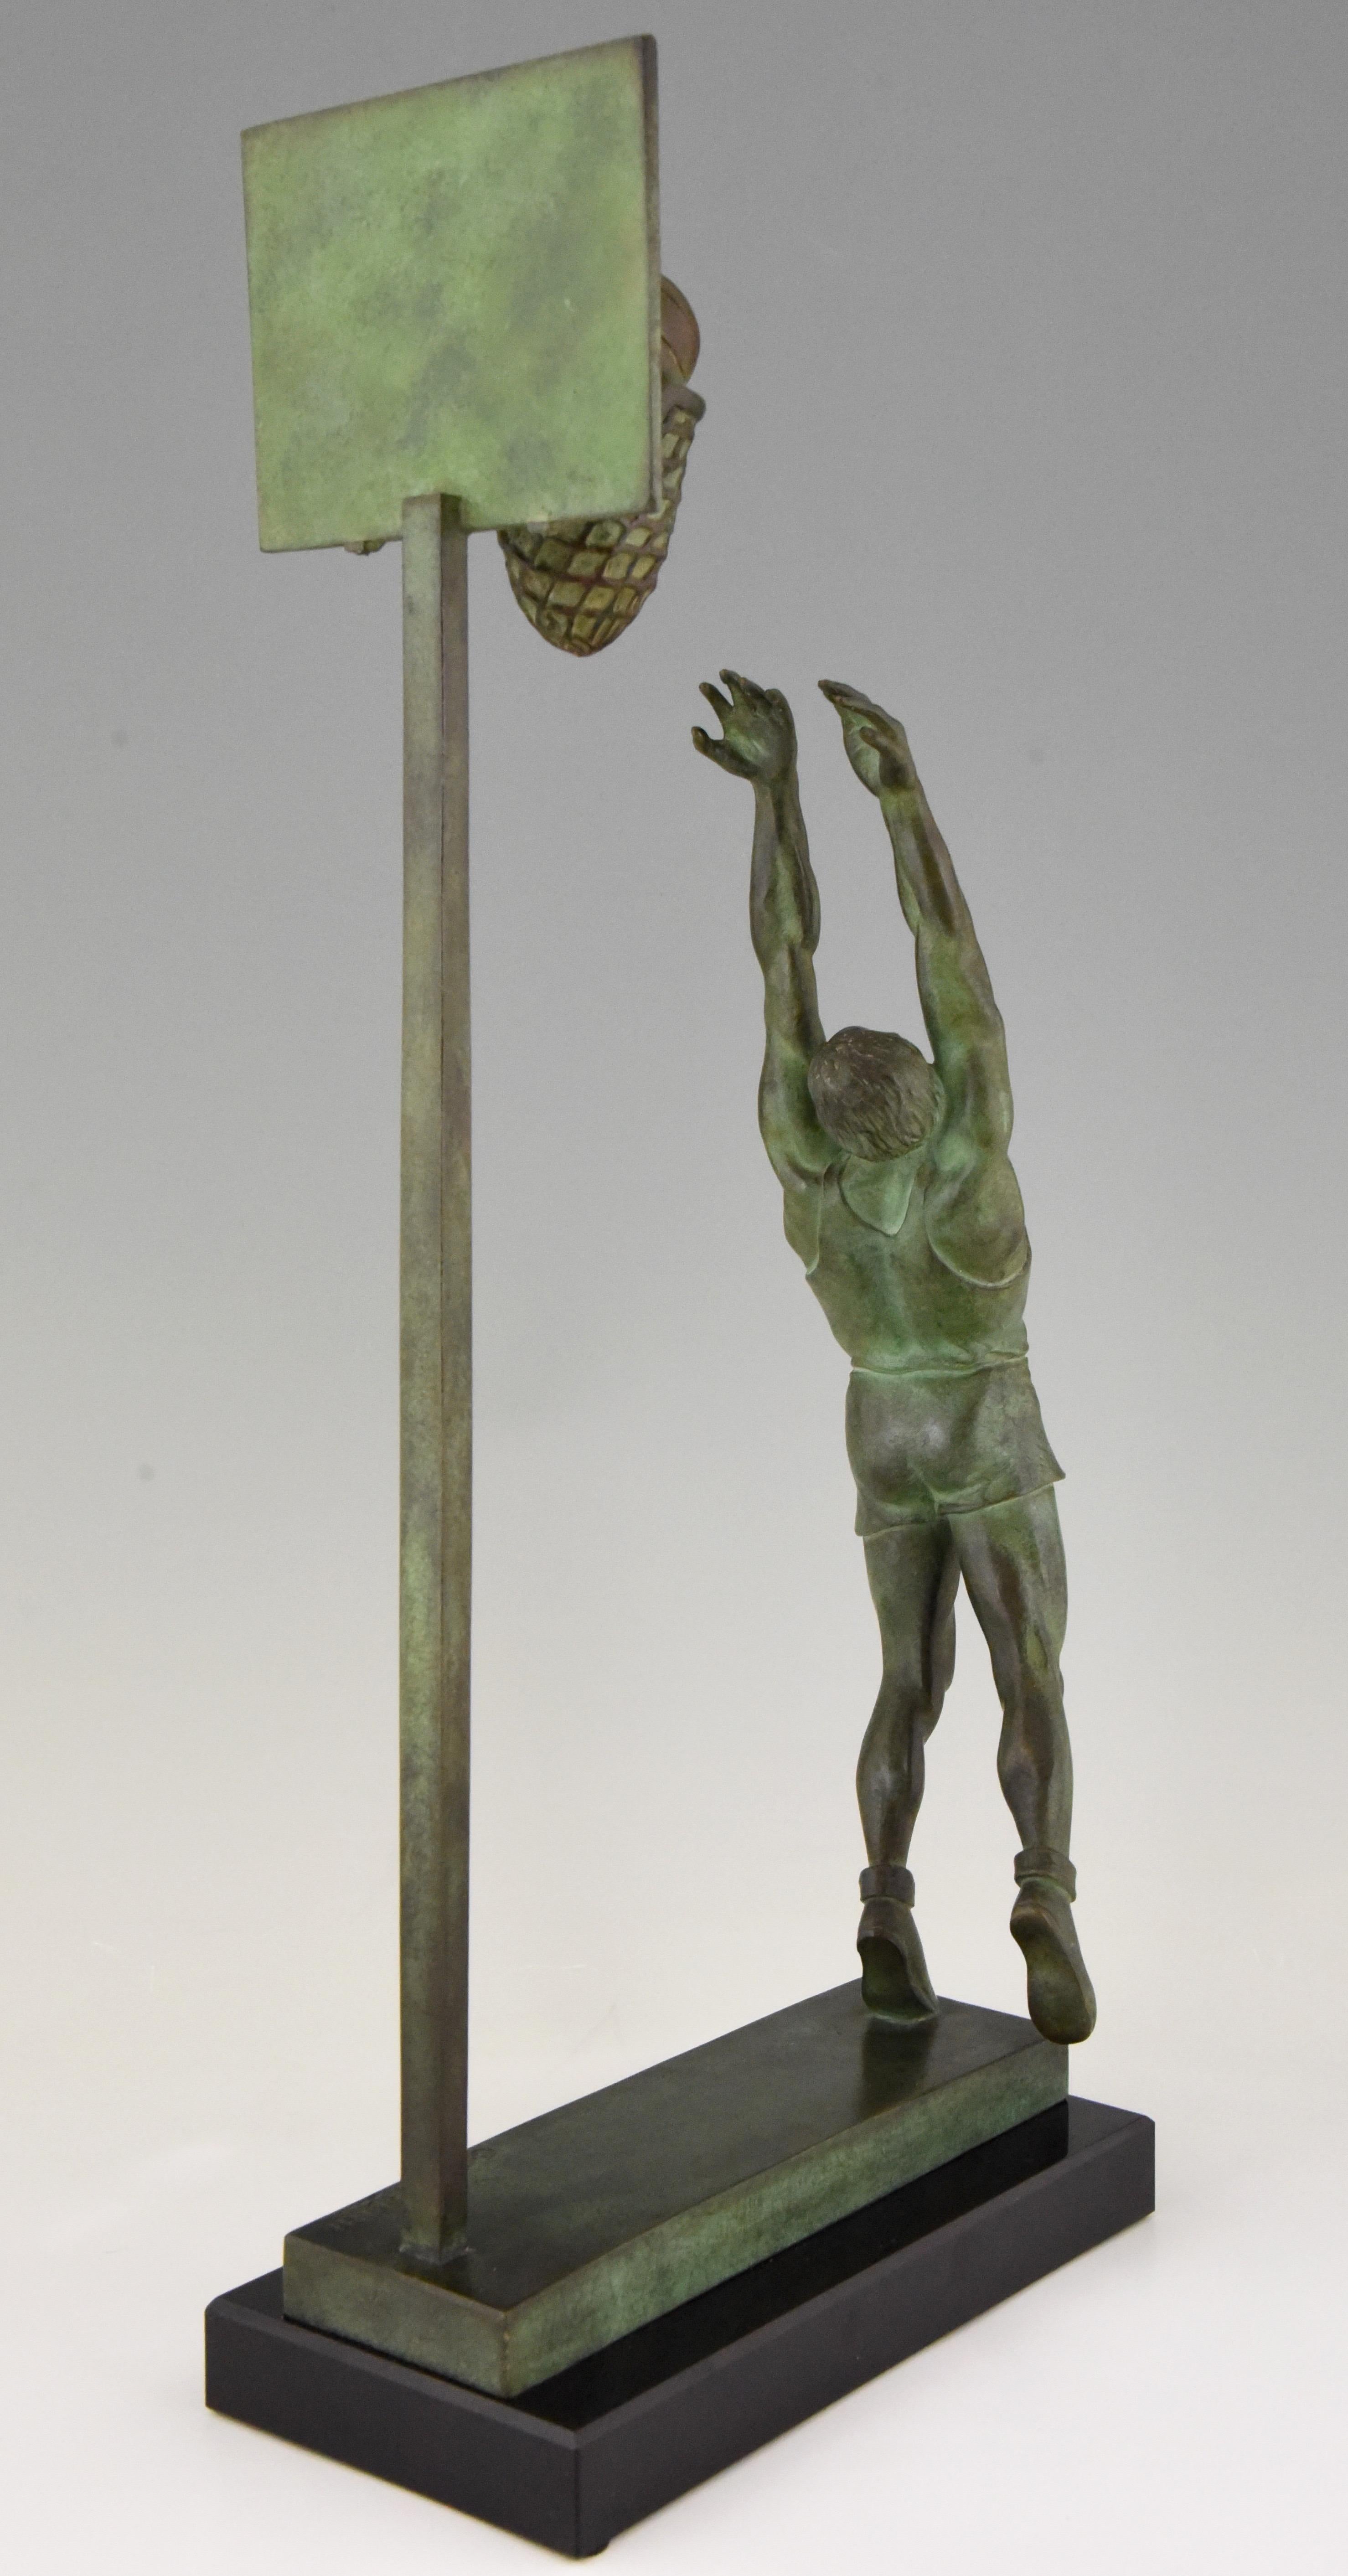 Art Deco Bronze Sculpture Basketball Player Reverse Dunk G. E. Mardini France 1